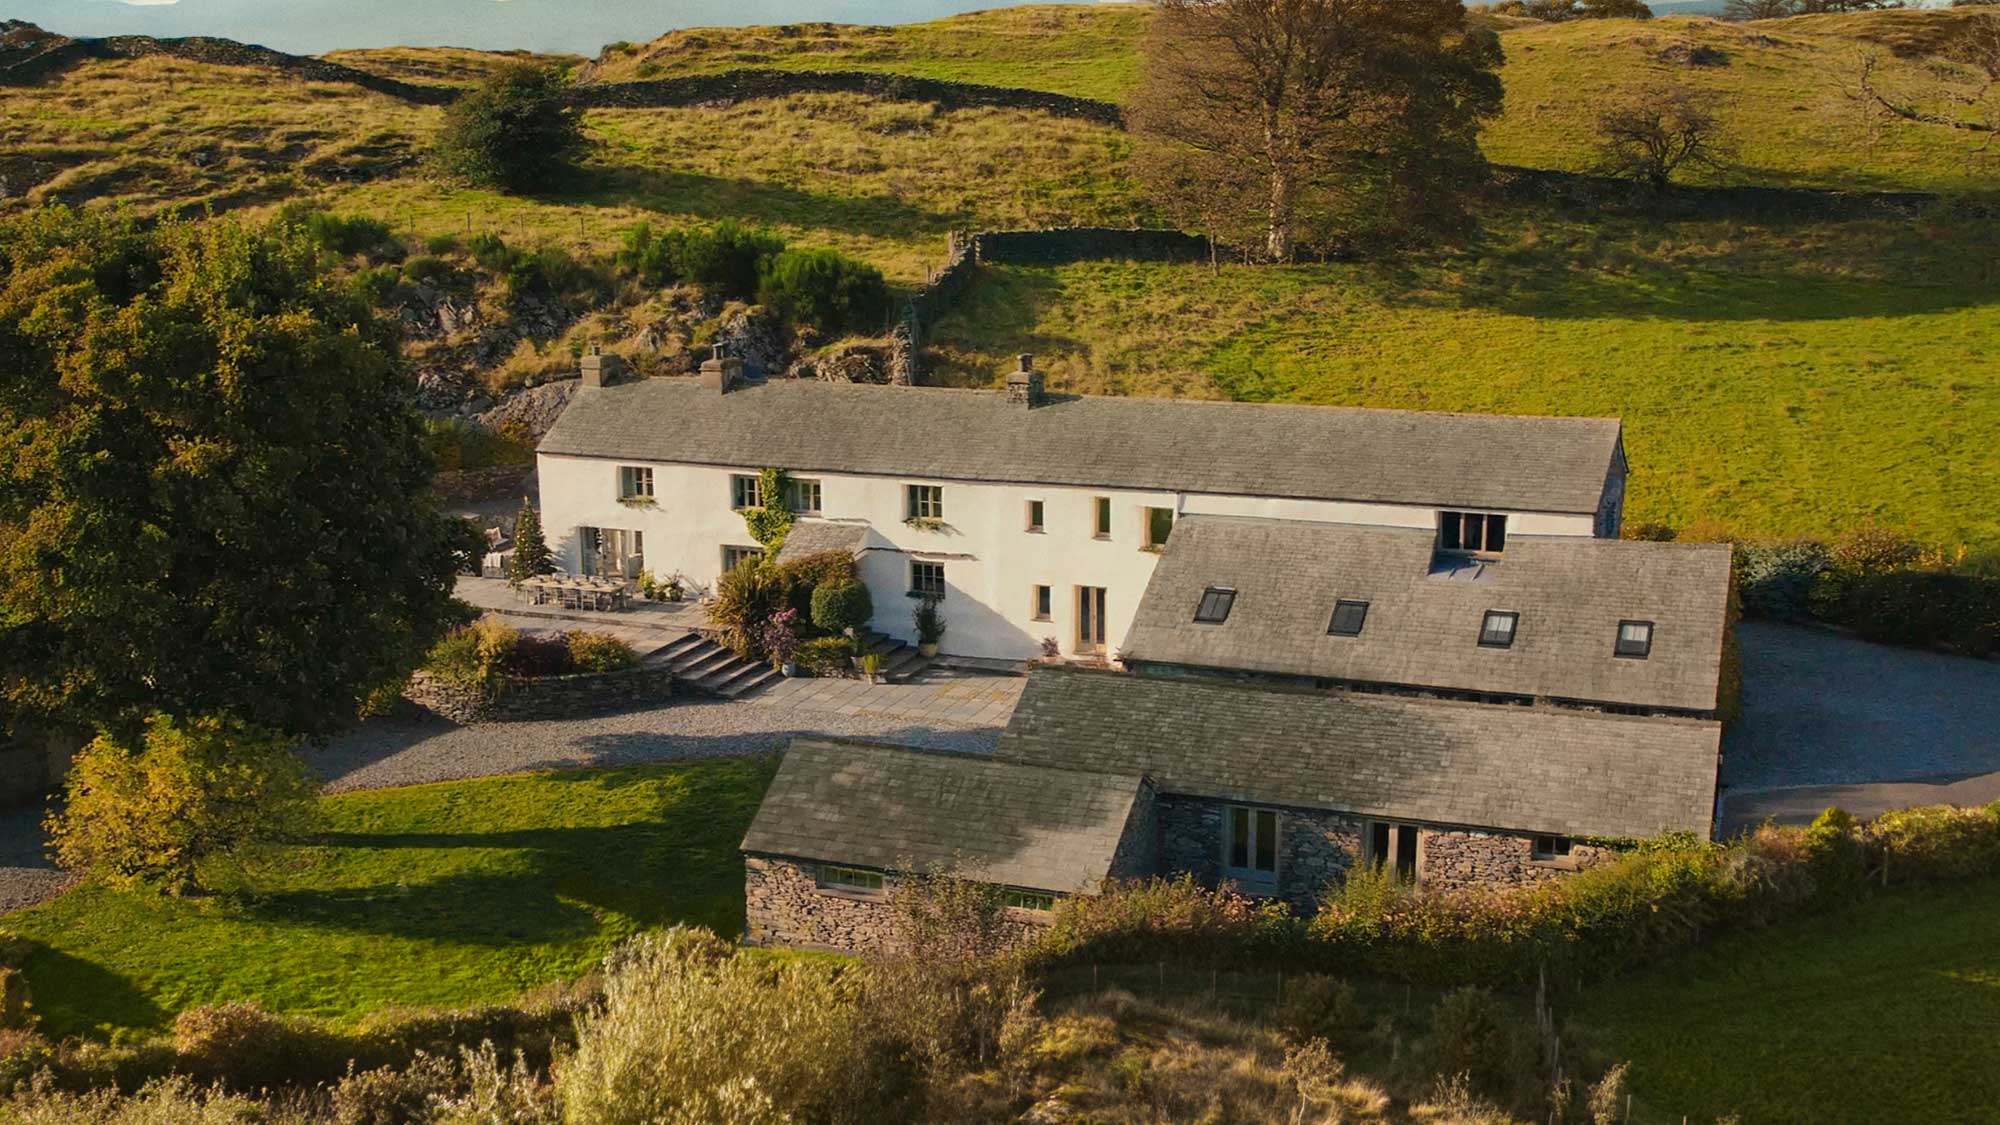 Omaze Million Pound House Draw - Lake District Drone Shot